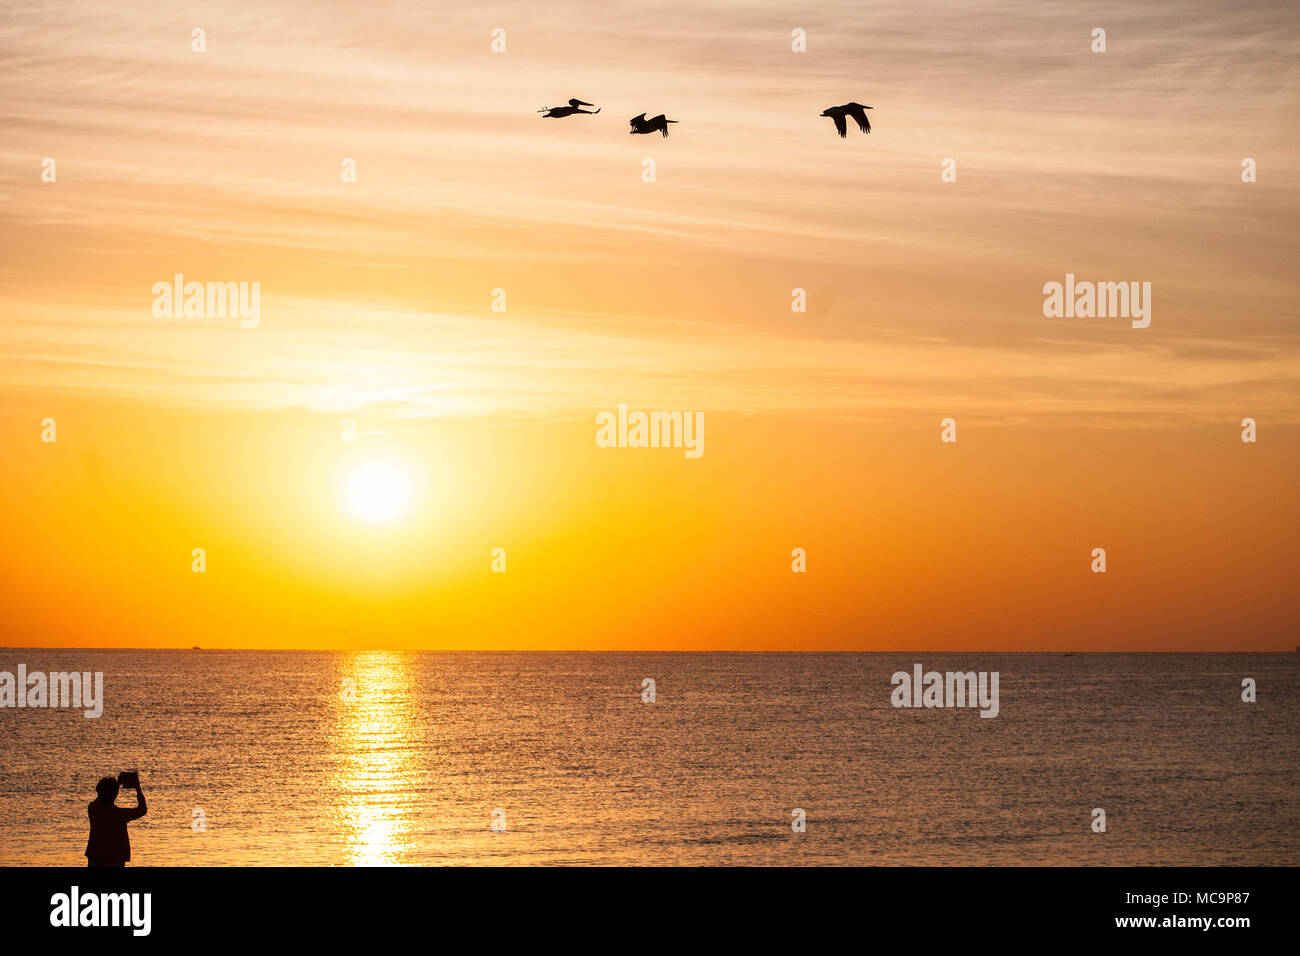 Une femme silhouettée prend des photos du soleil doré coloré à une plage de Floride Banque D'Images